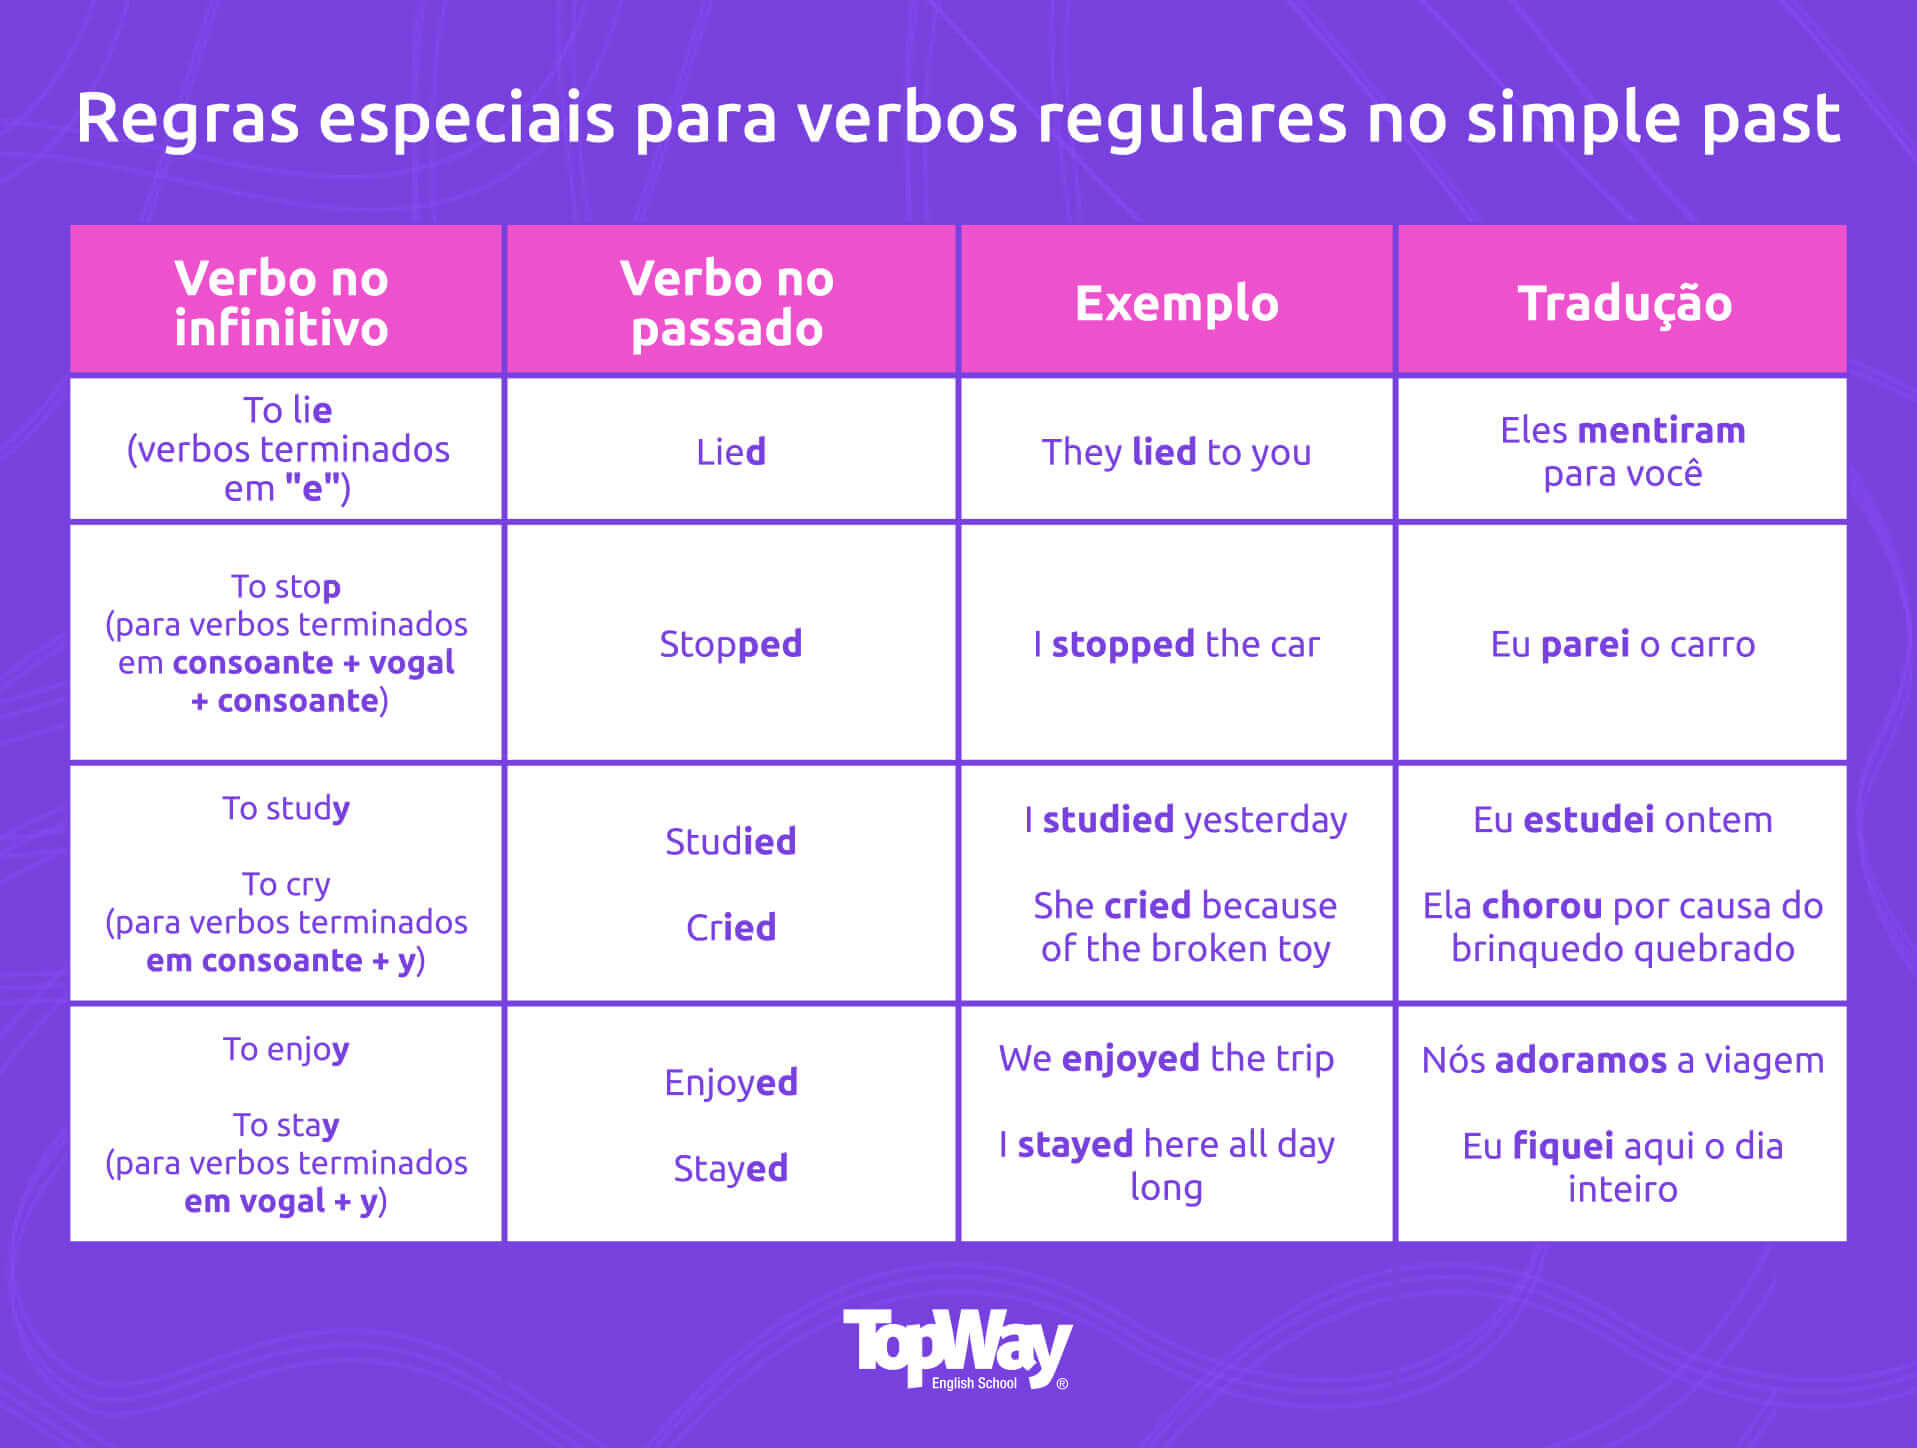 Verbos regulares em inglês: dicas e tabela para memorizar